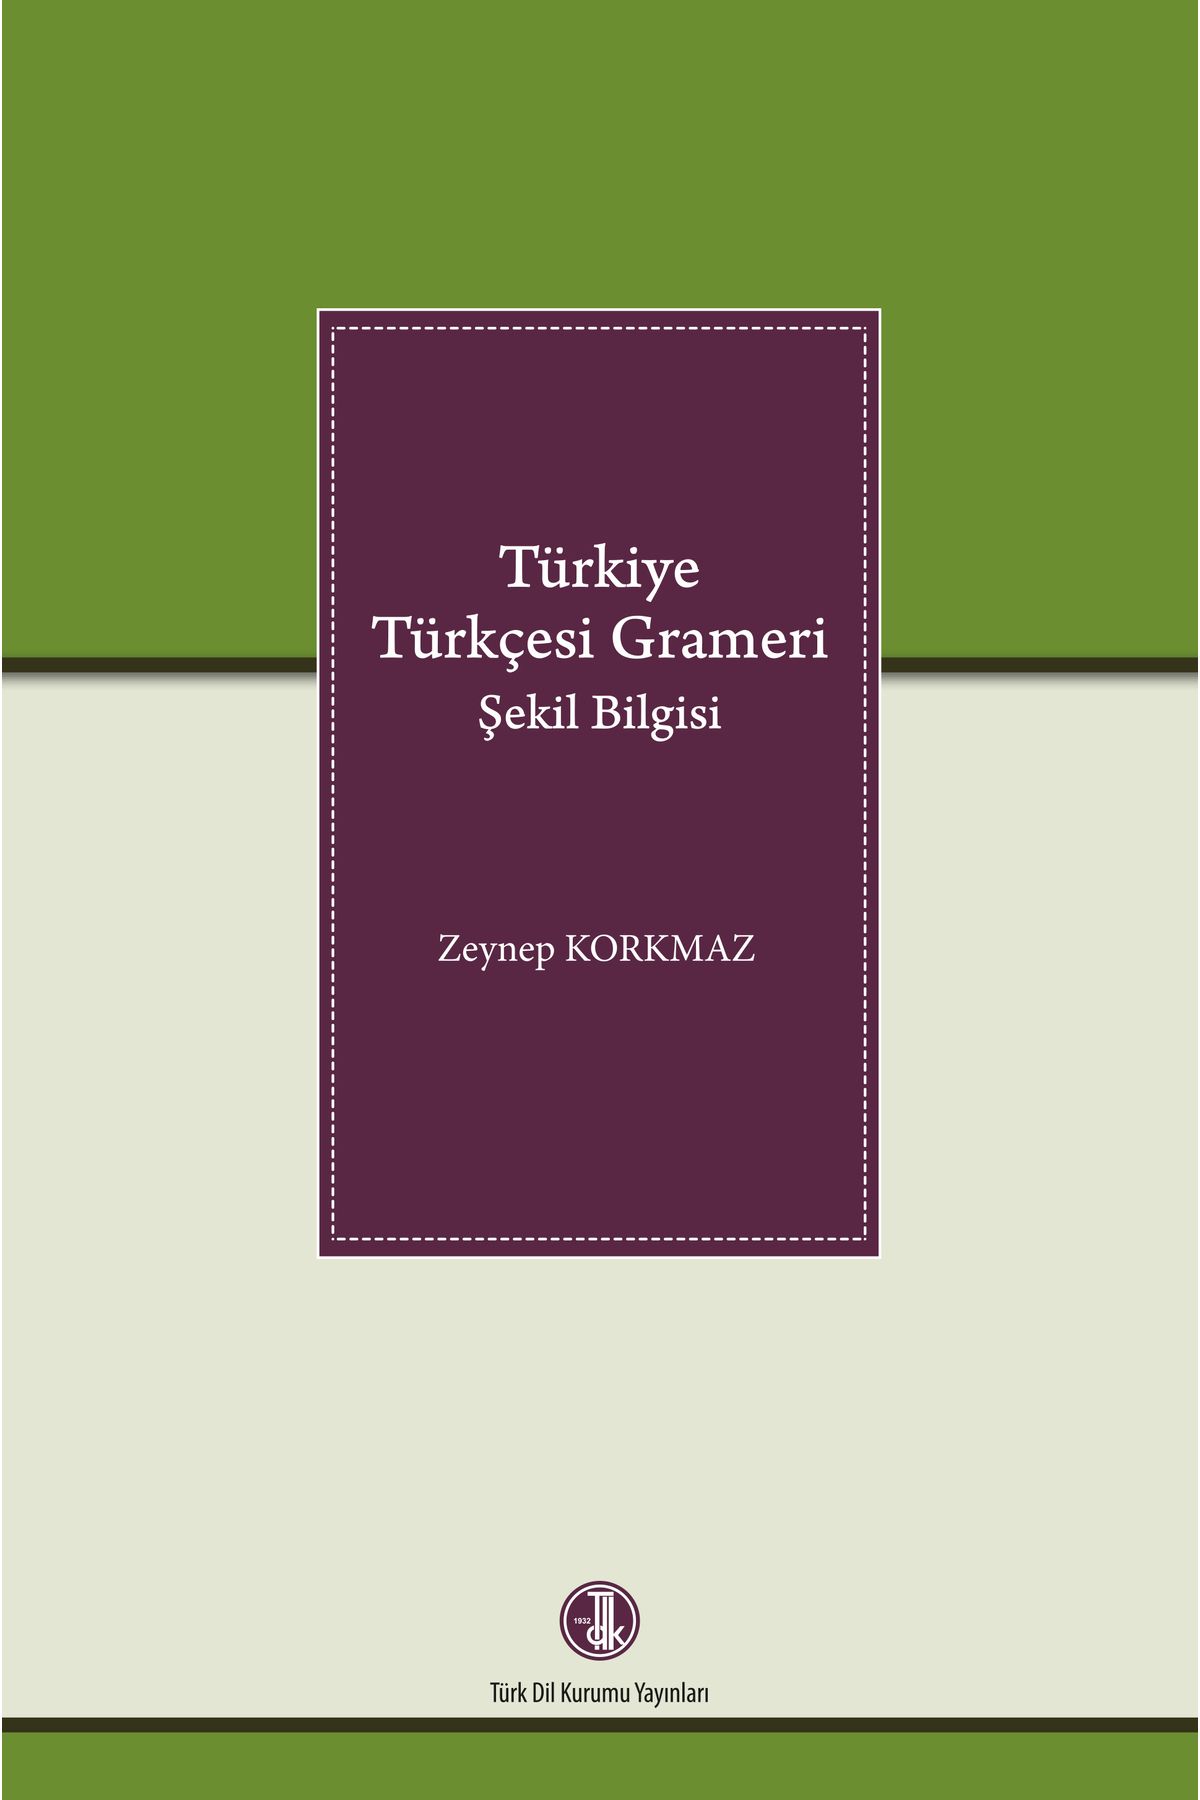 Tdk Yayınları Türkiye Türkçesi Grameri şekil bilgisi